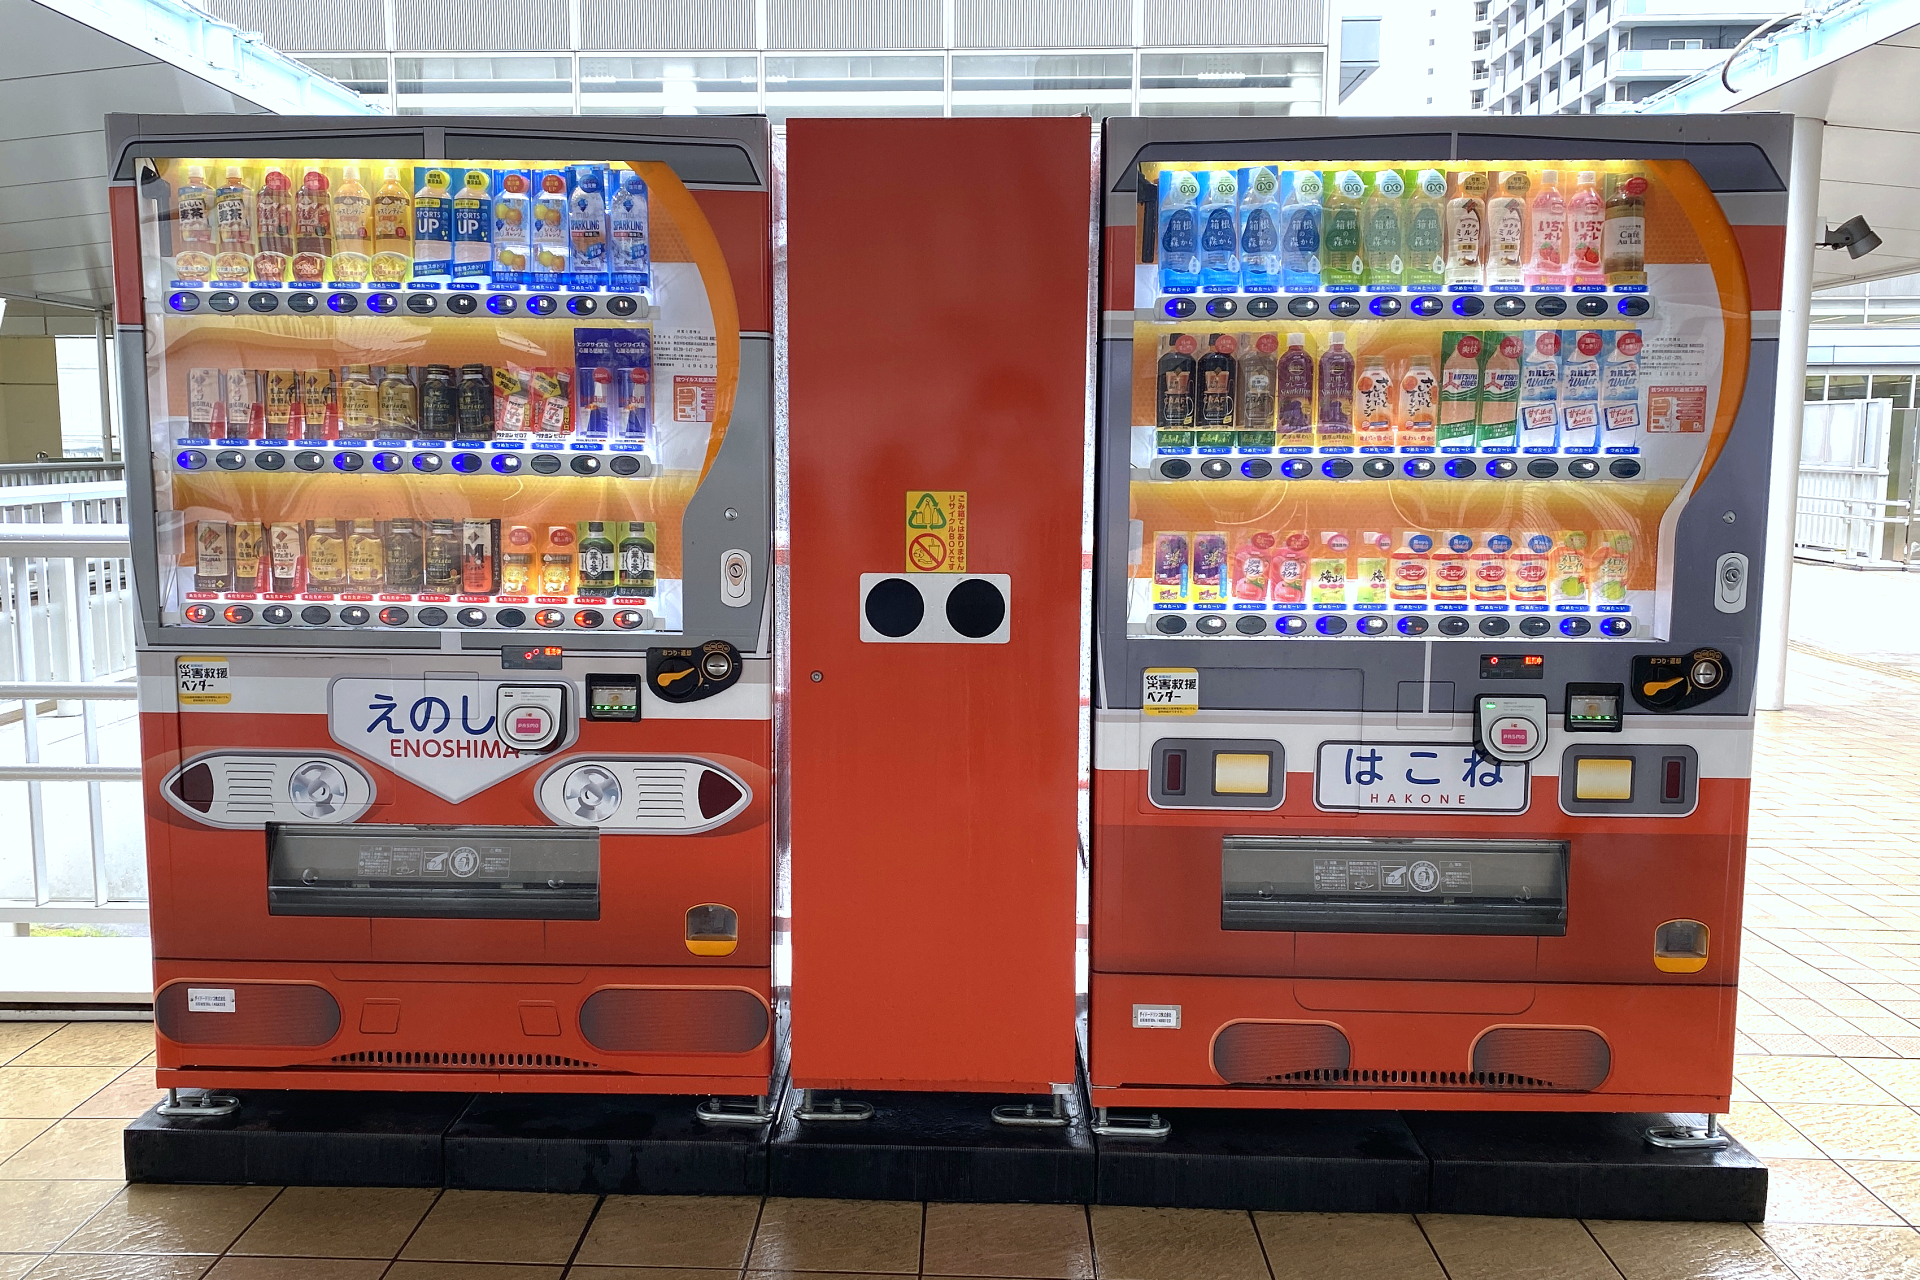 小田急の海老名駅にある自動販売機にはどんな秘密があるのか Odapedia 小田急のファンブログ